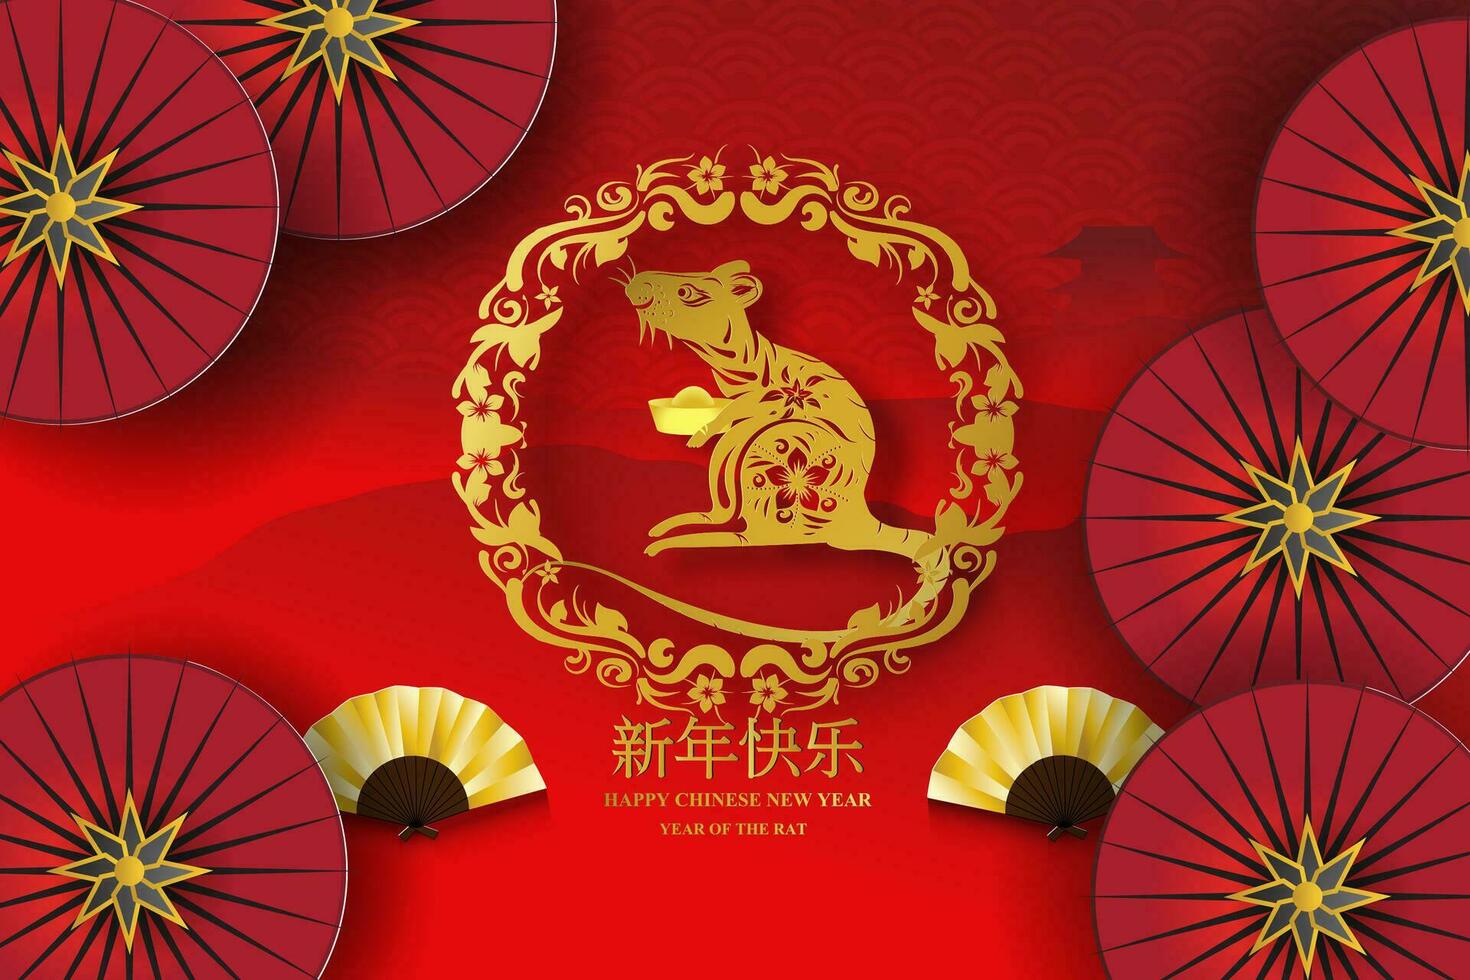 2020 Lycklig kinesisk ny år av de blomma gyllene tecken design för din traditionell festival hälsningar kort, papper skära och craft.vector illustration eps10 kinesisk översättning år av de råtta vektor